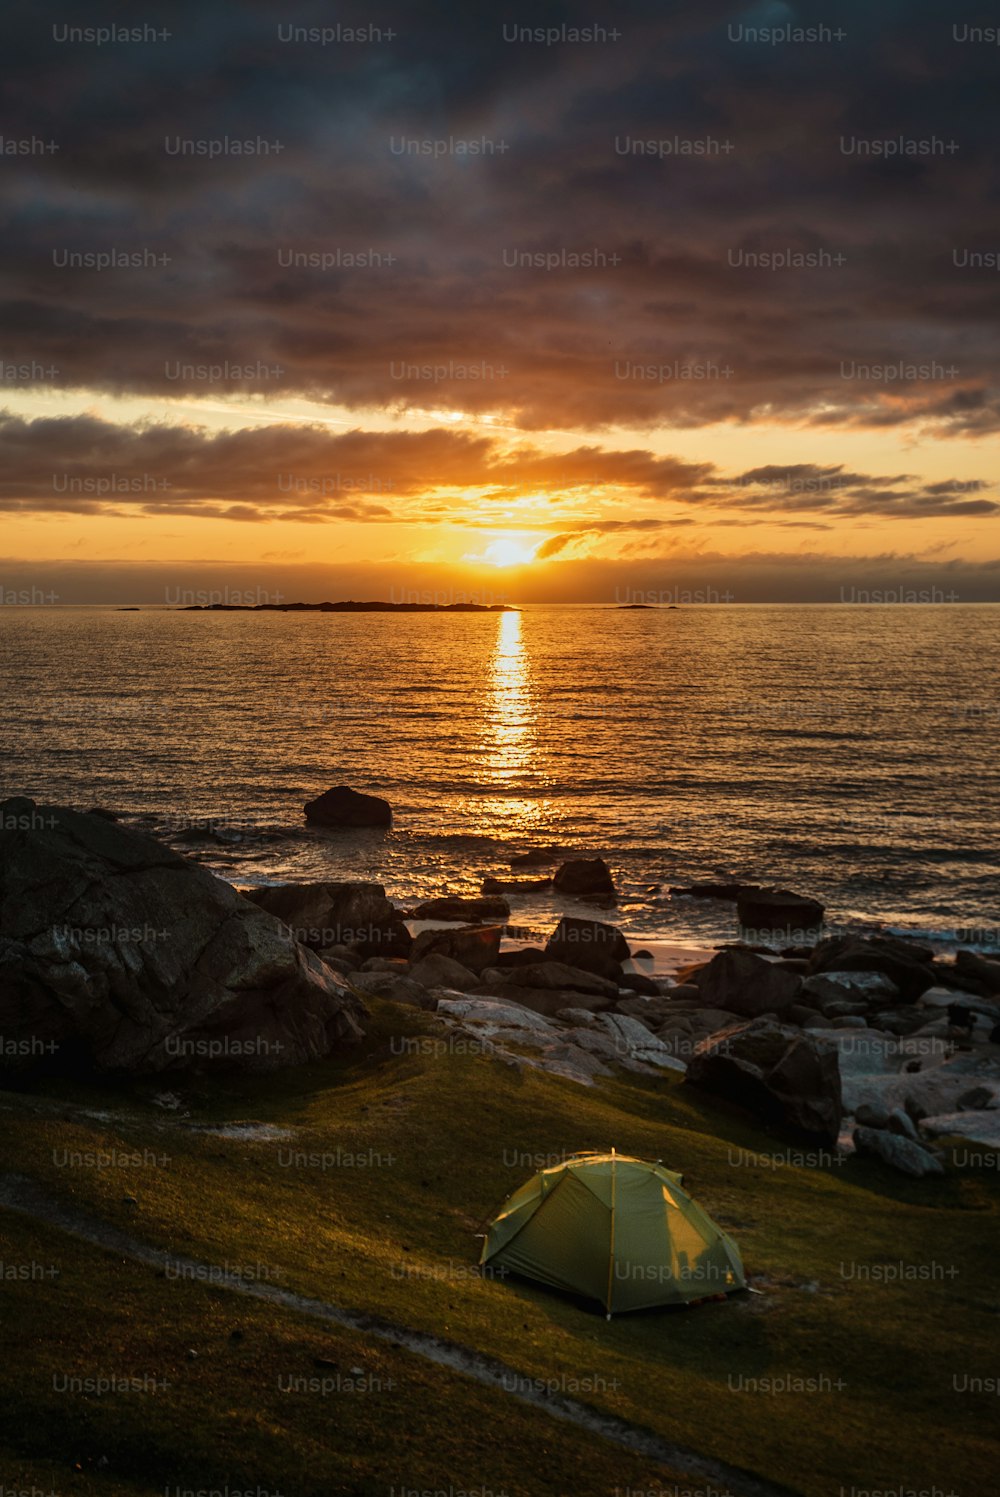 Ein Zelt wird bei Sonnenuntergang an einem felsigen Strand aufgebaut